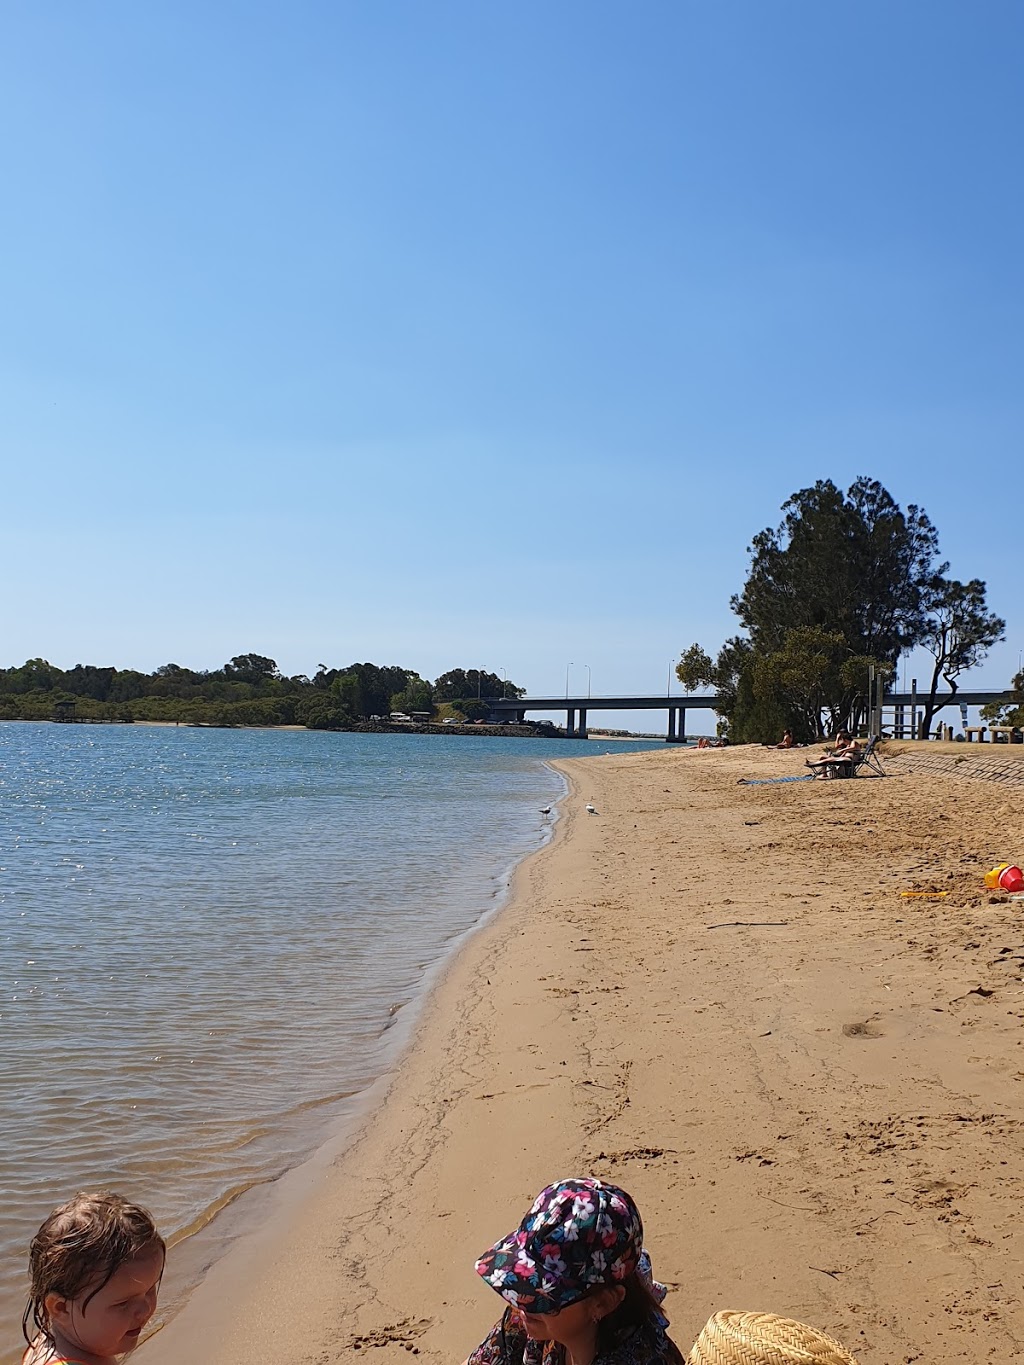 Gold Coast Fishing Spots - Winders Park | park | Duringan St, Currumbin QLD 4223, Australia